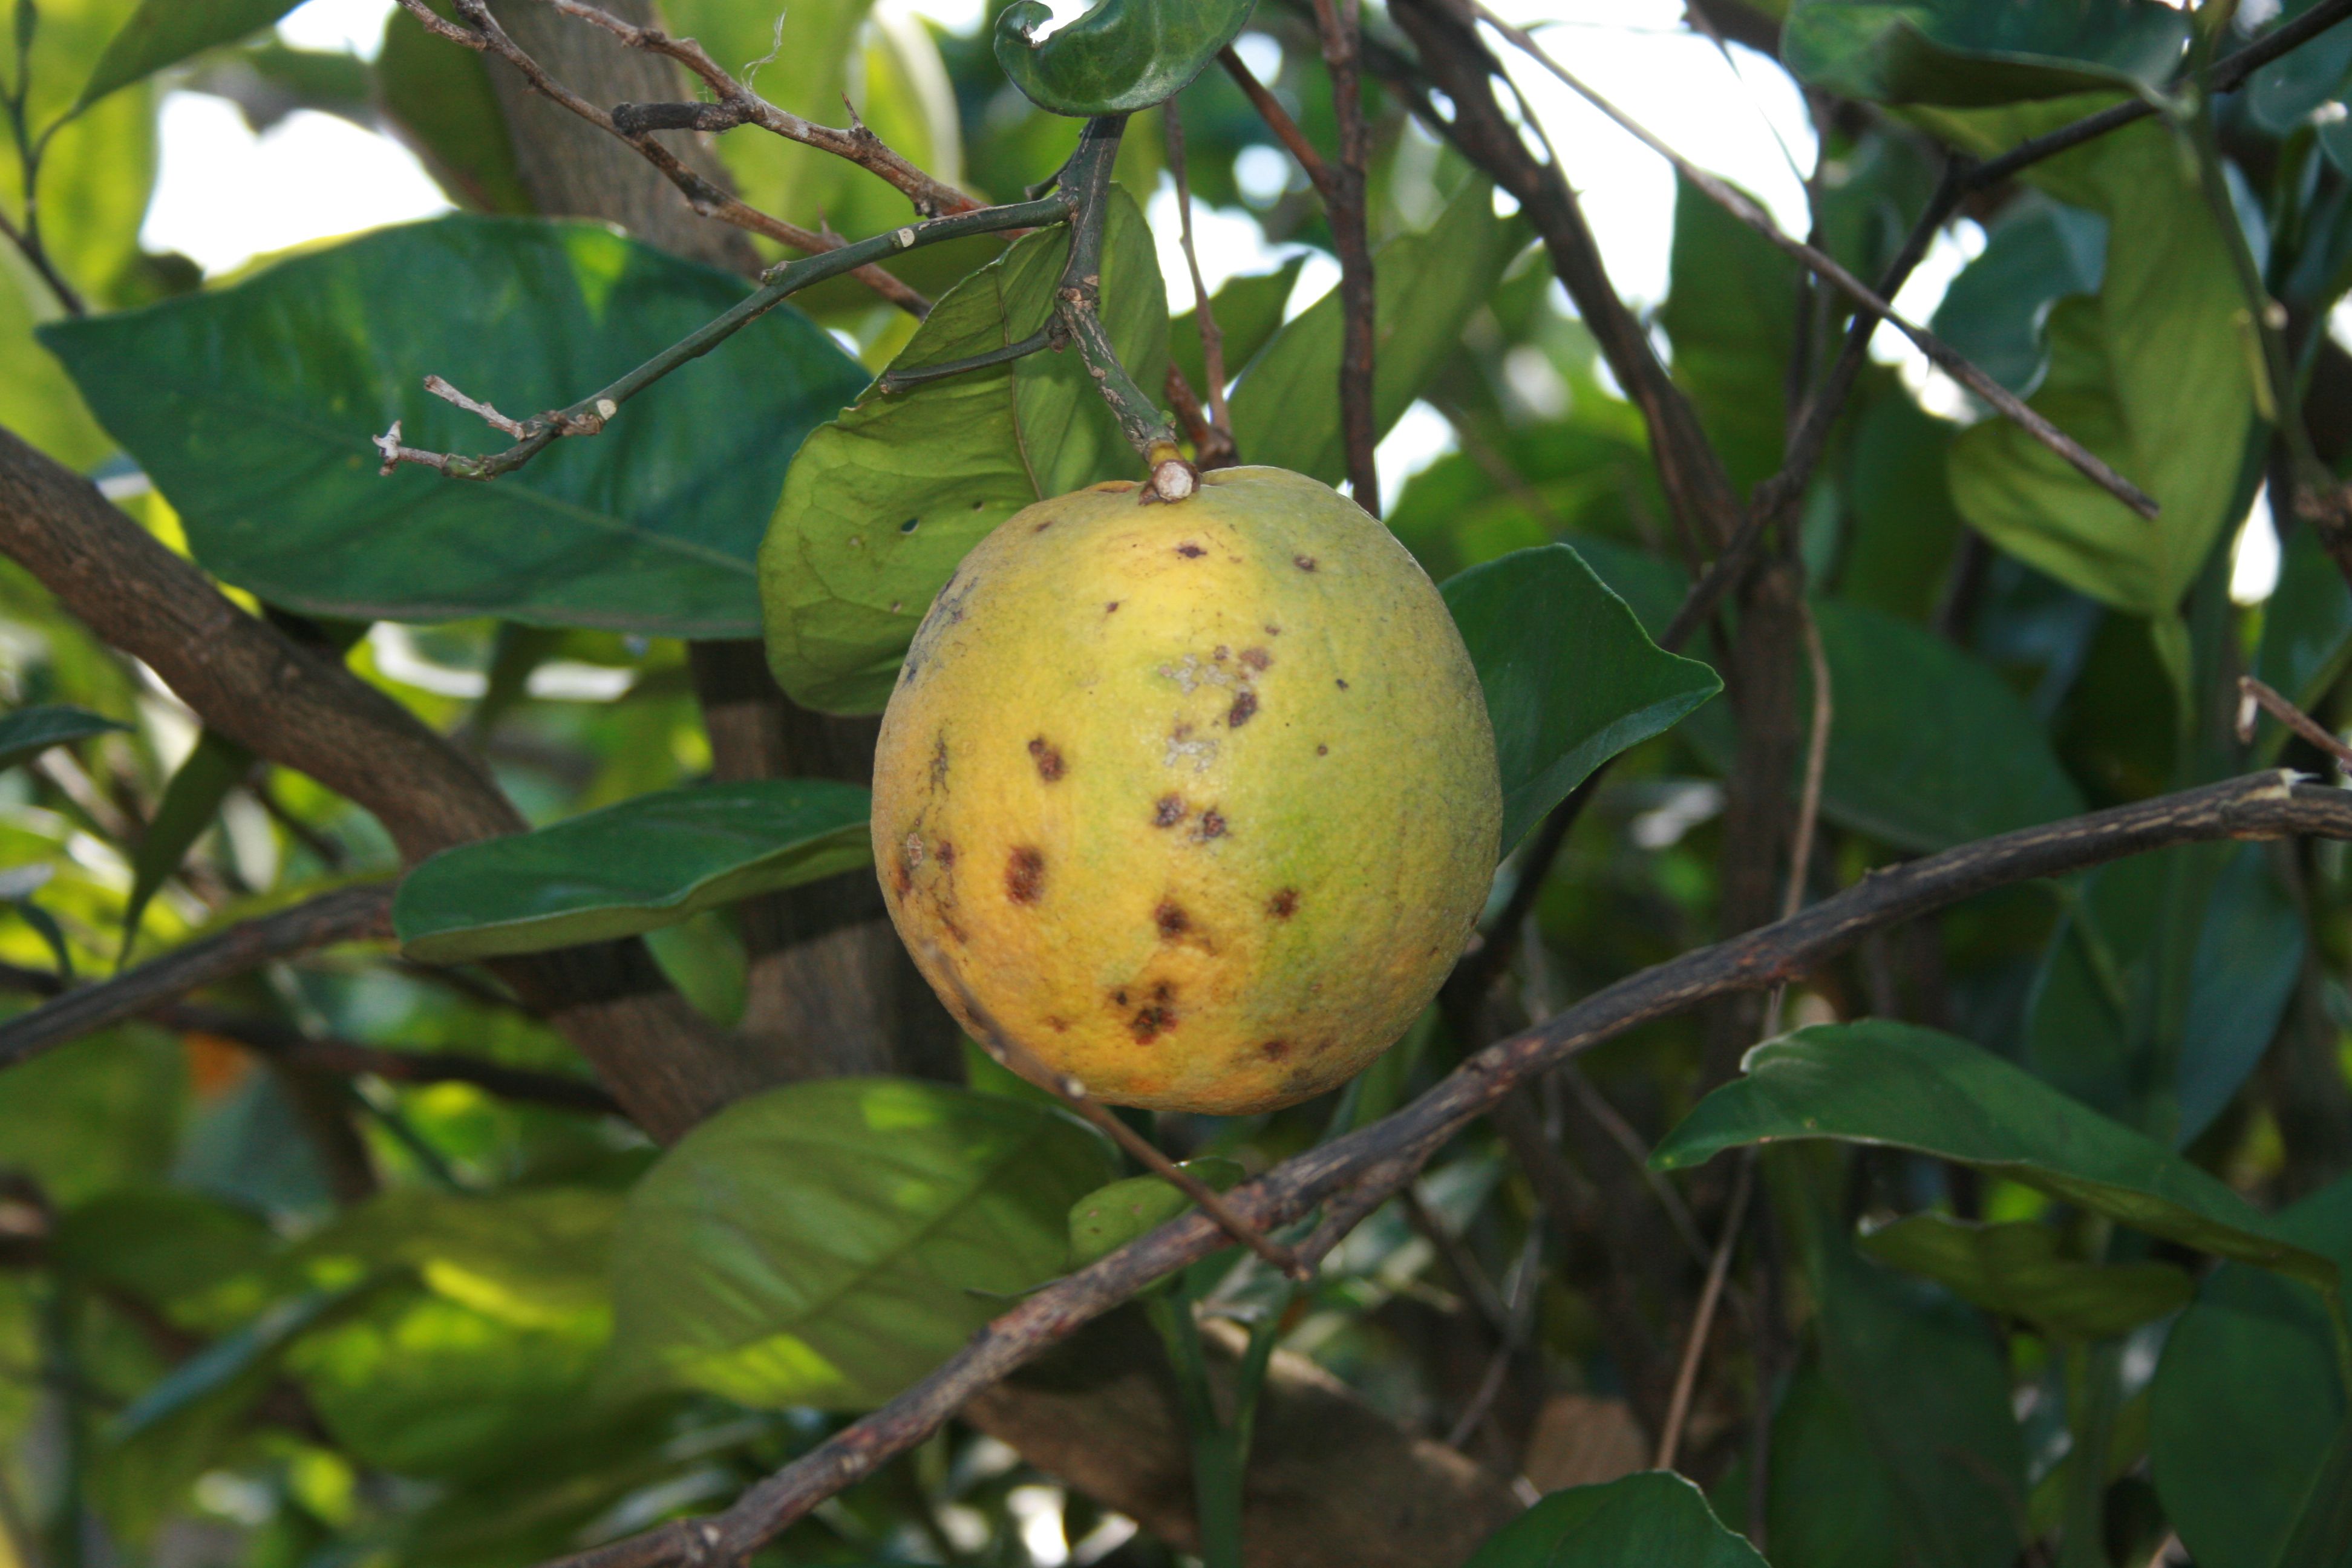 Fruit symptoms showing color change.